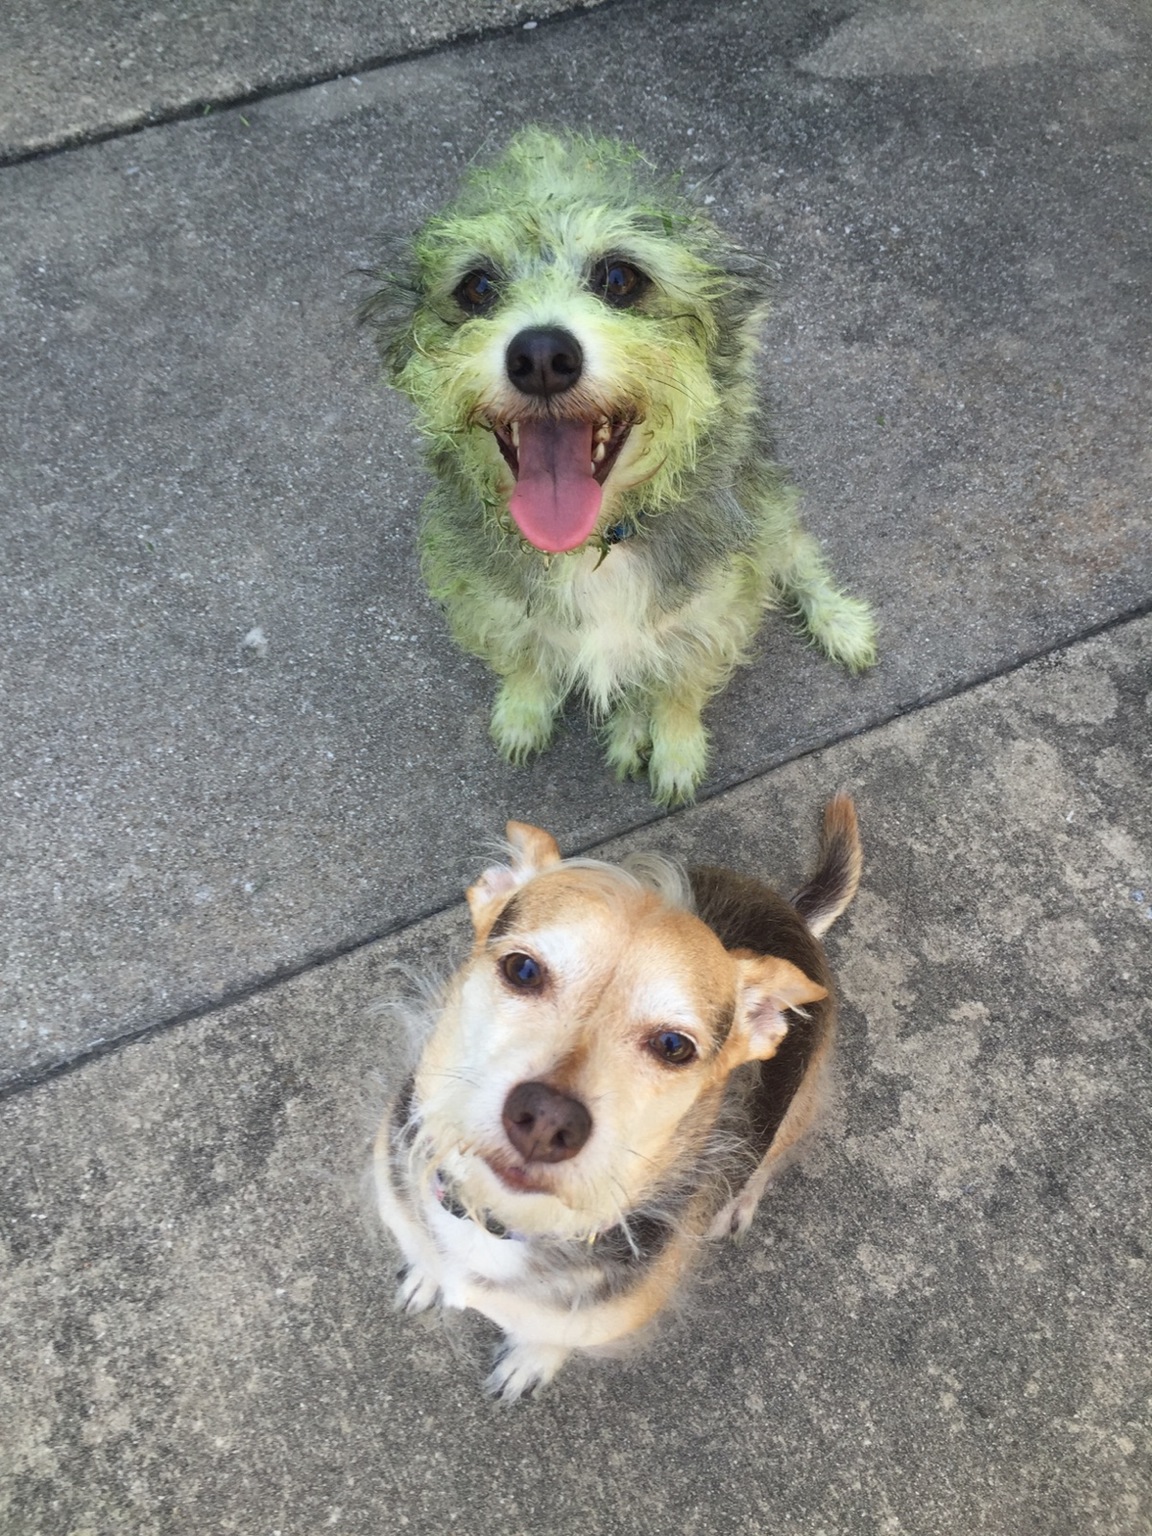 Lequel des deux chiens a aidé à tondre la pelouse ?